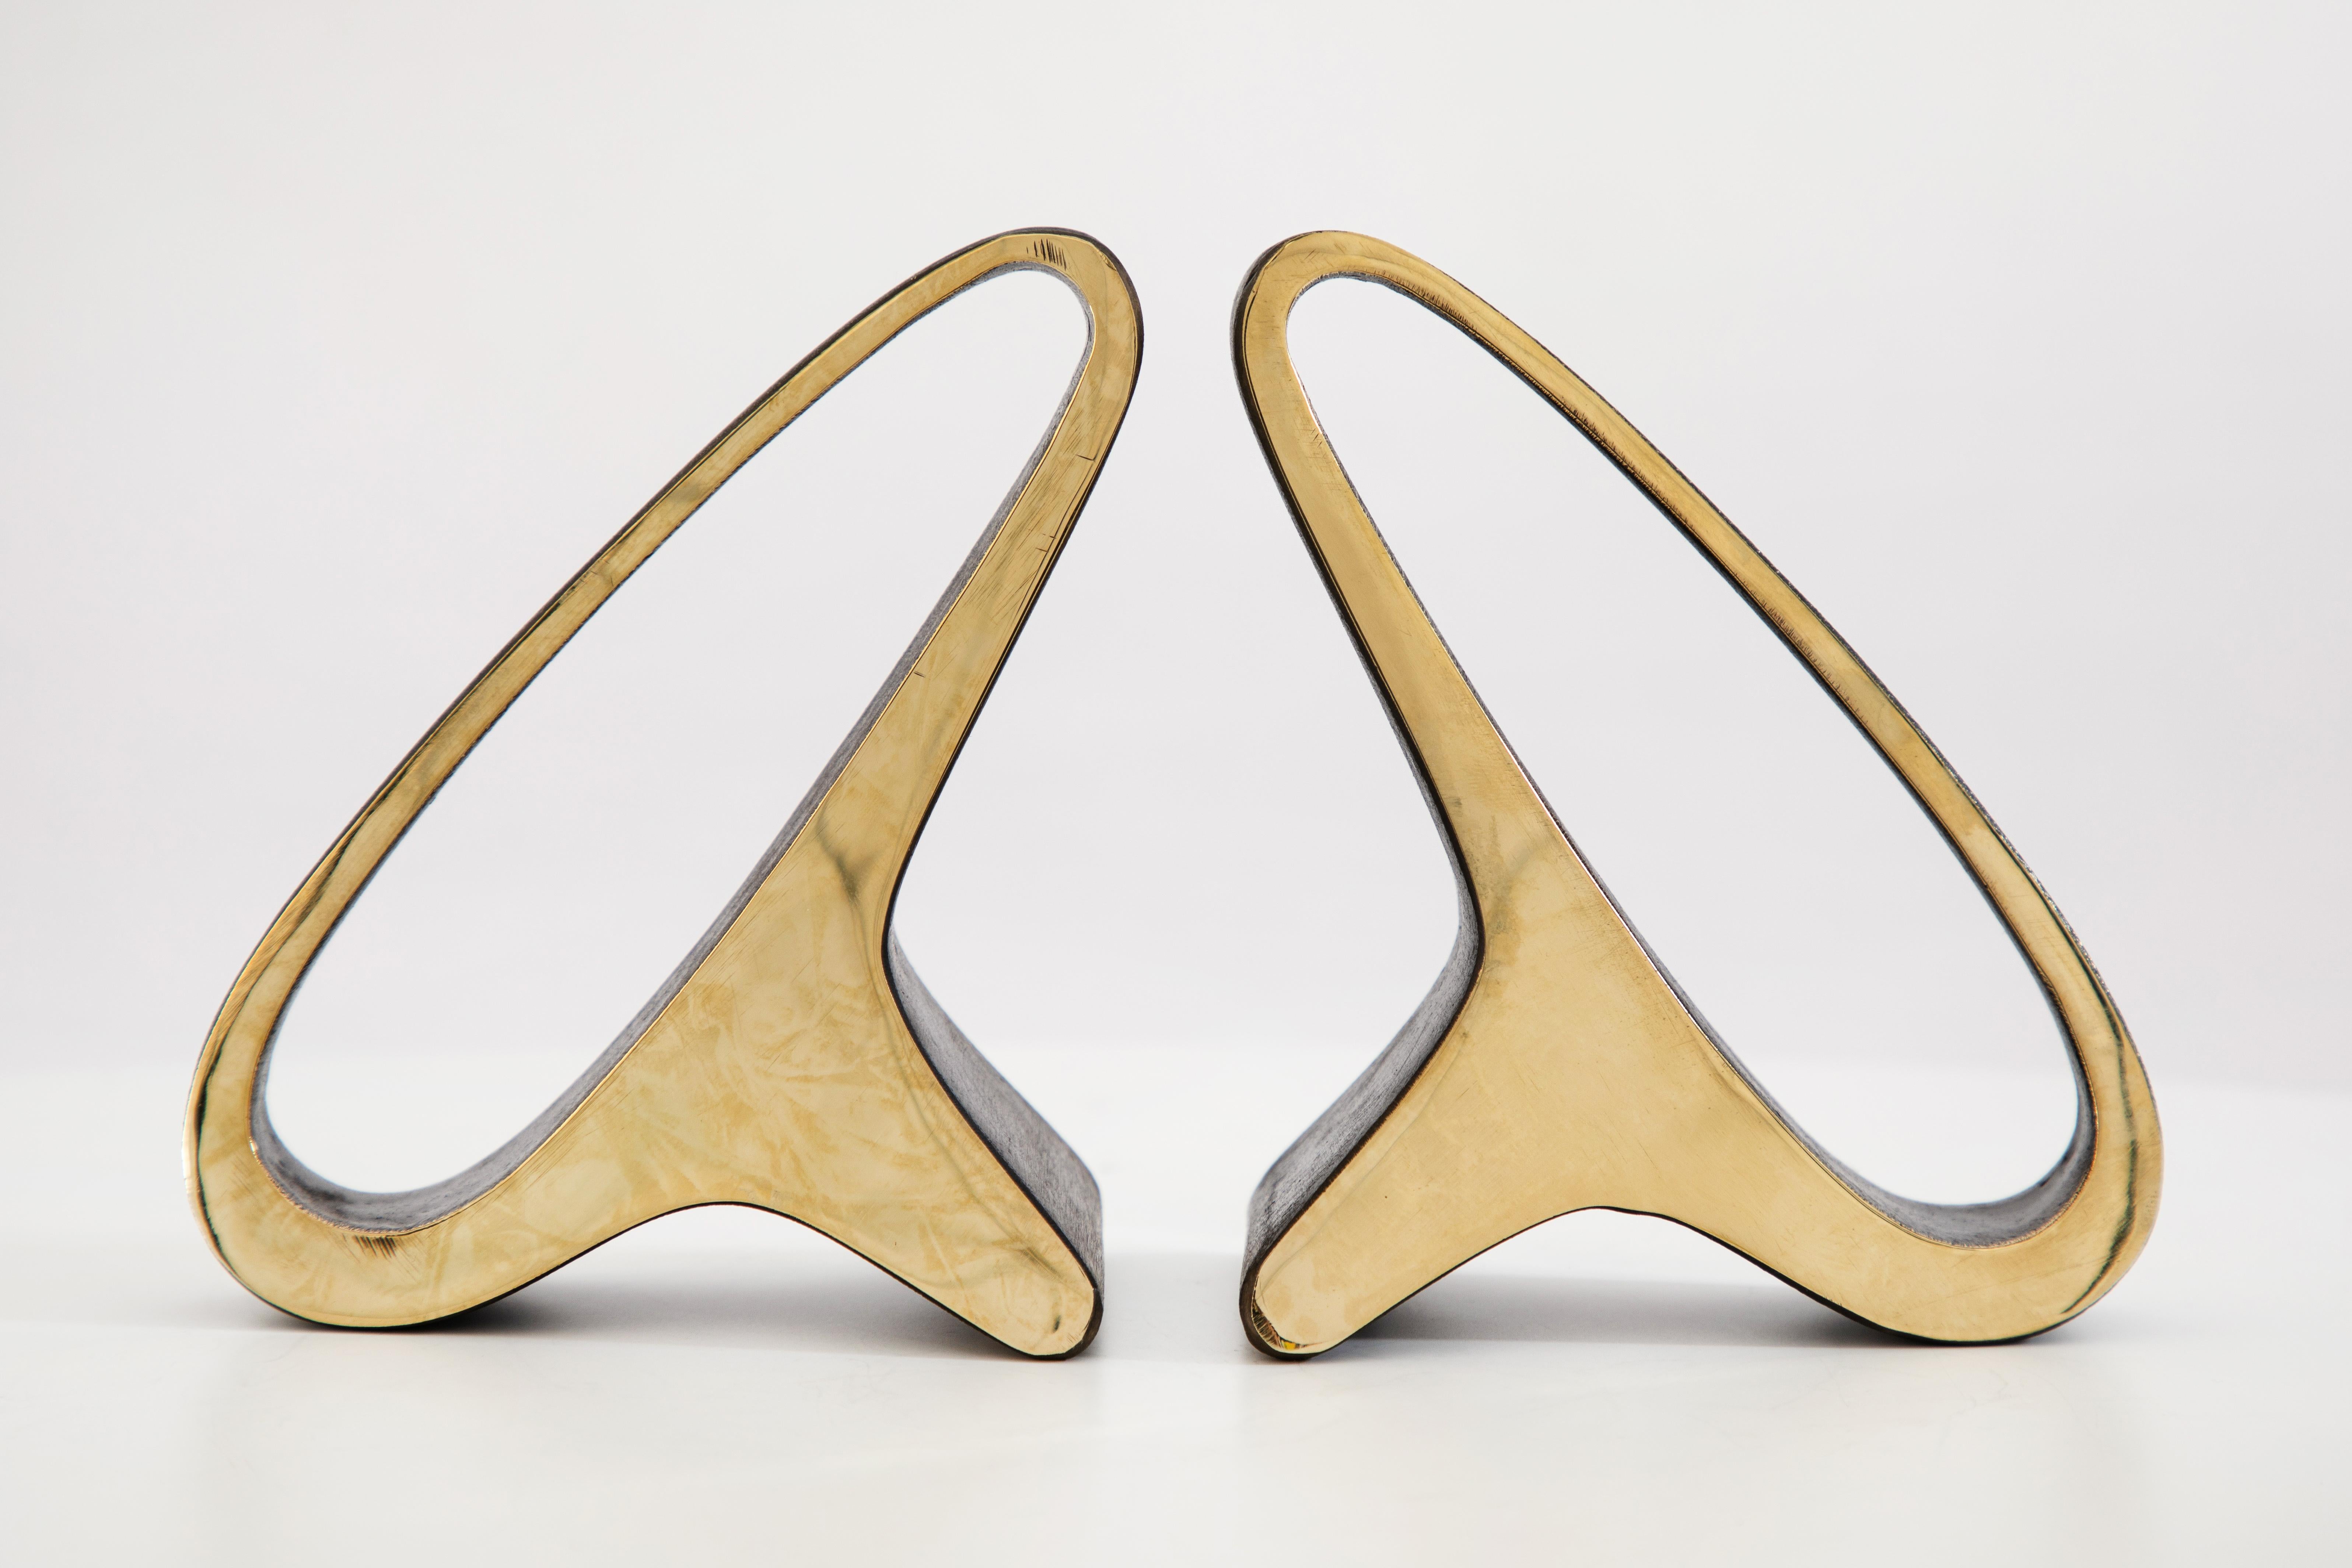 Paar Carl Auböck Modell #3848 Messing Buchstützen. Dieses unglaublich raffinierte und skulpturale Paar Buchstützen wurde in den 1950er Jahren entworfen und ist aus poliertem Messing gefertigt. 

Der Preis gilt pro Paar. Unbegrenzt lieferbar Bitte